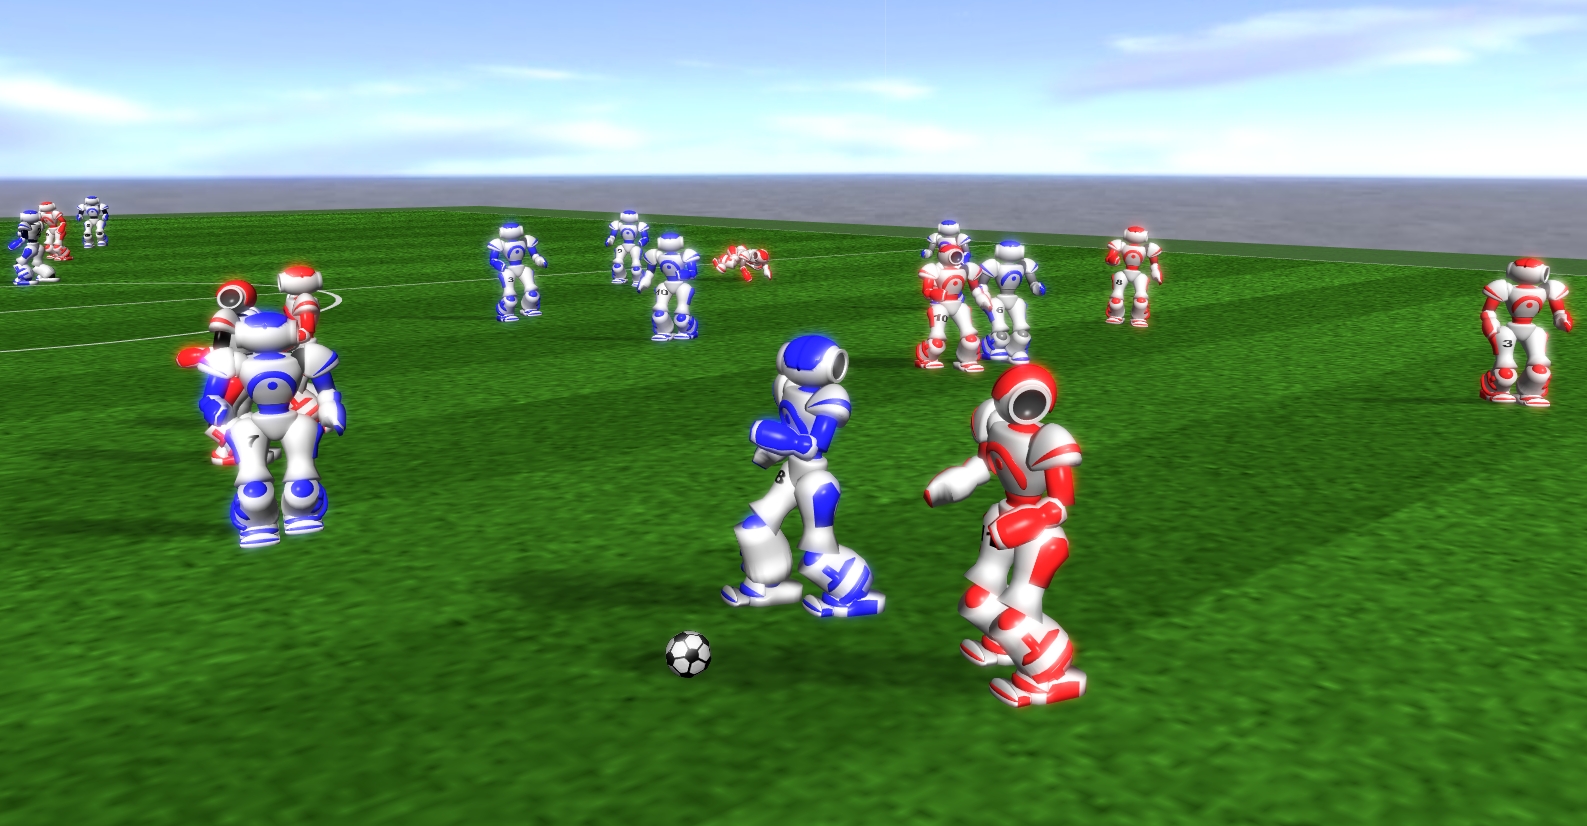 Grafik zeigt fußballspielende Roboter auf einem Spielfeld